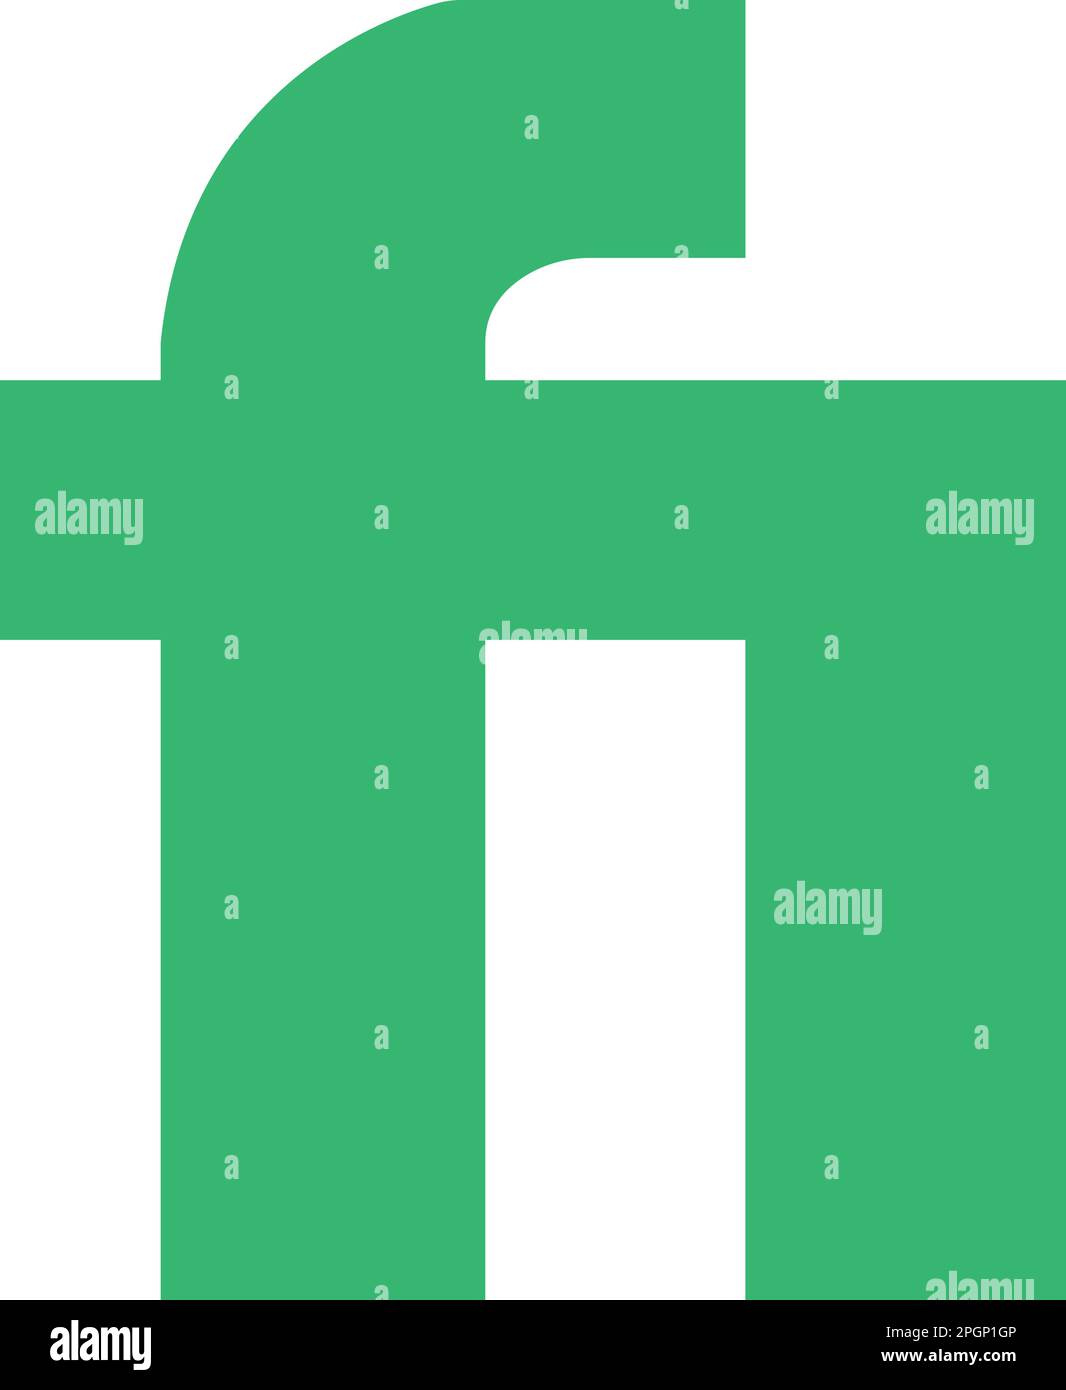 Der Freelancing-Markt für Fiverr App Icon eignet sich perfekt für die Verwendung in jedem Projekt, das mit Apps zusammenhängt. Modernes Design mit dem ikonischen Fiver Logo in einem klaren Design. Nutze es o Stock Vektor